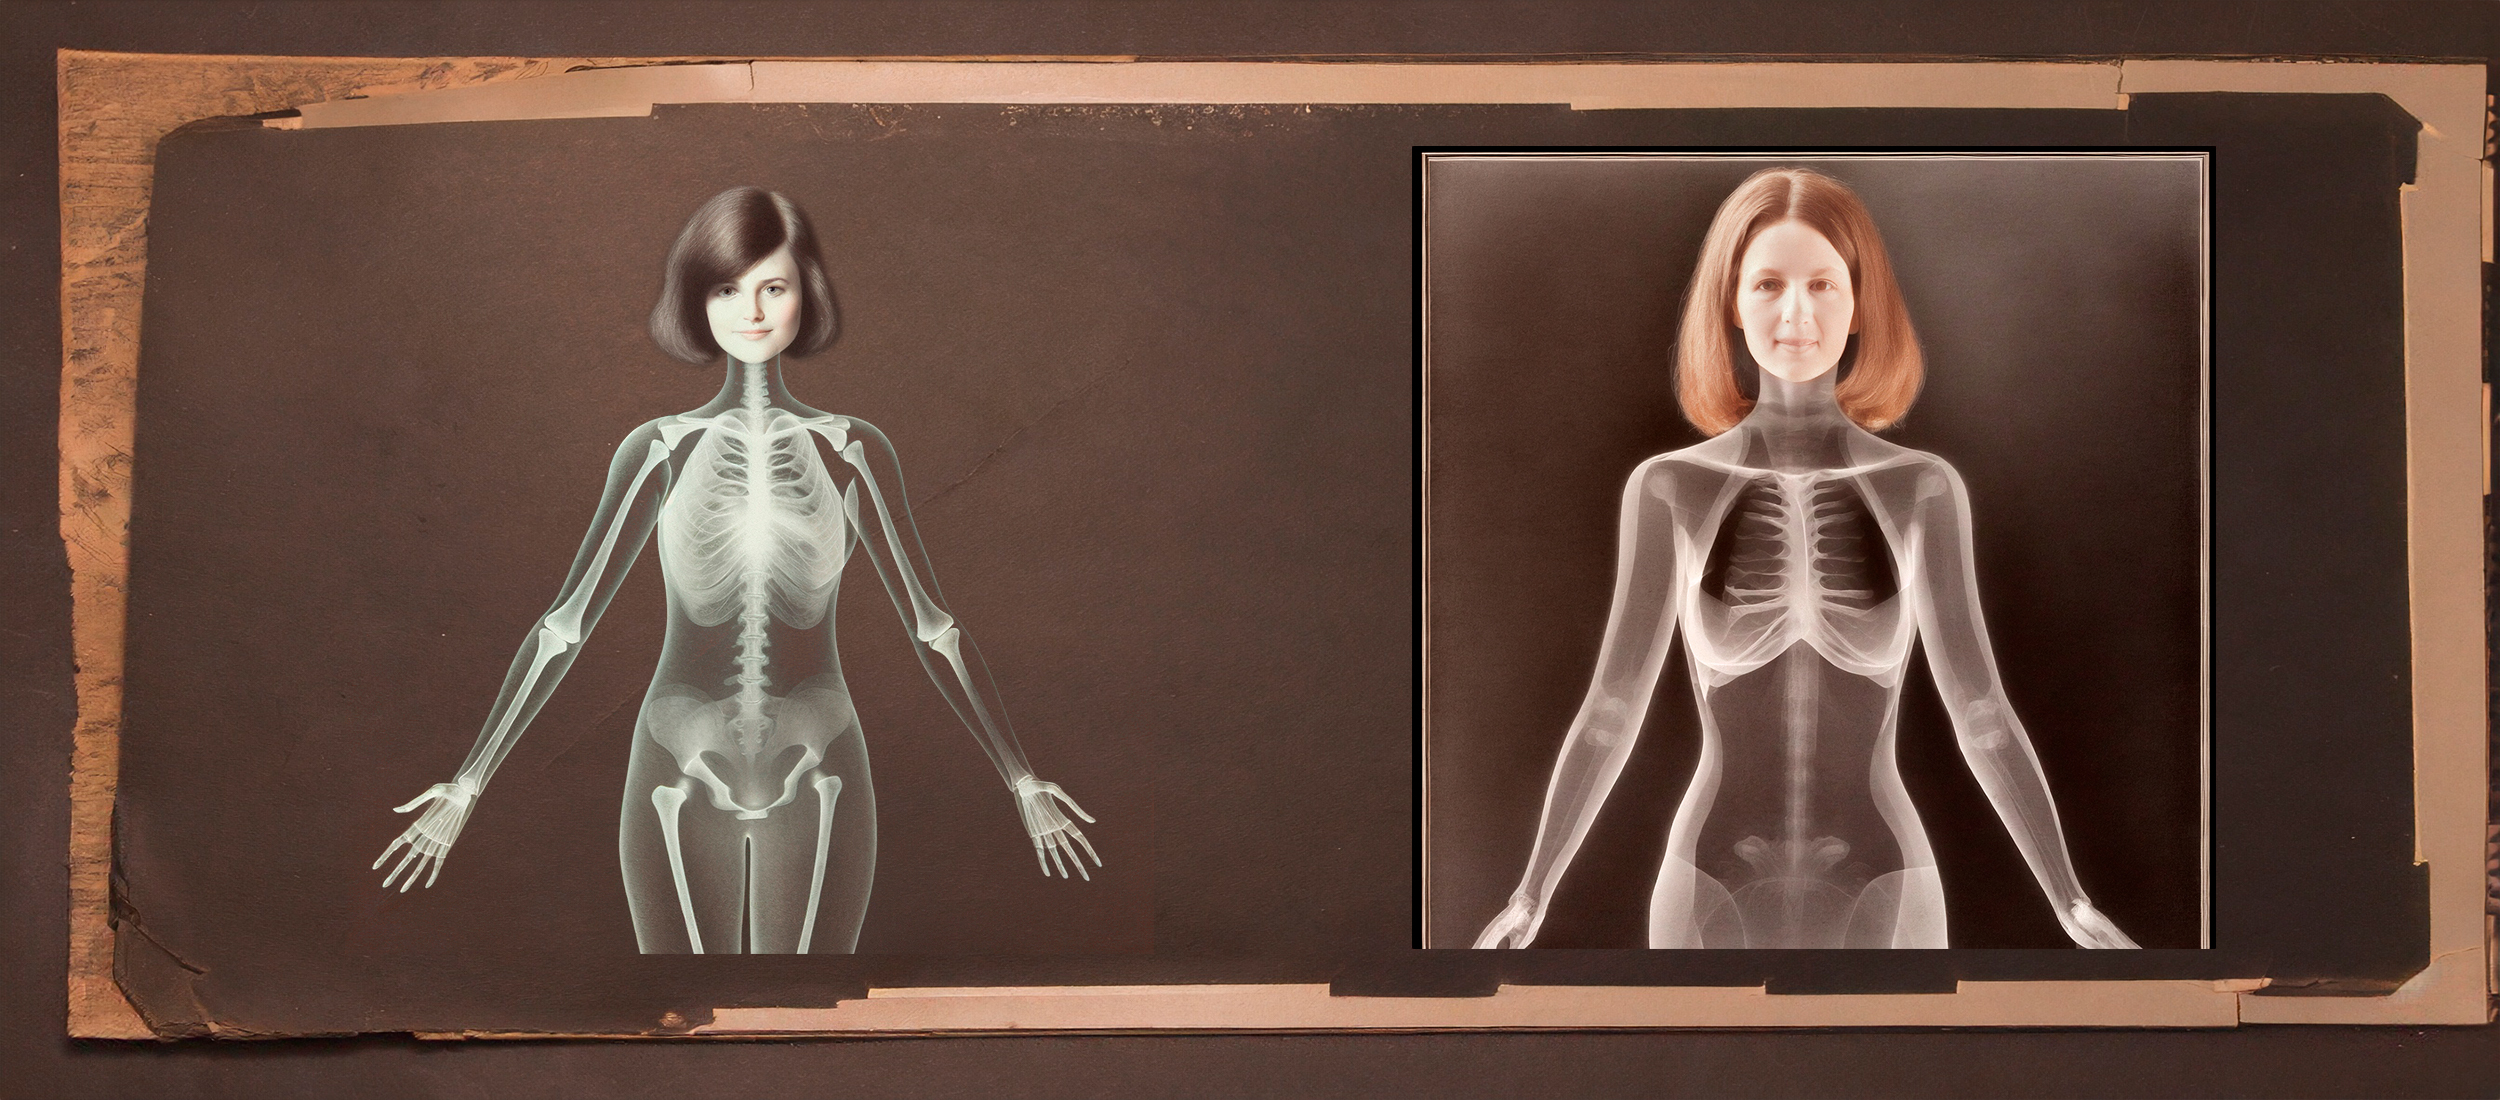 Image style photo ancienne, crée par Intelligence Artificielle via Firefly, squelettes aux rayons X de 2 femmes avec leurs visages et leurs cheveux.